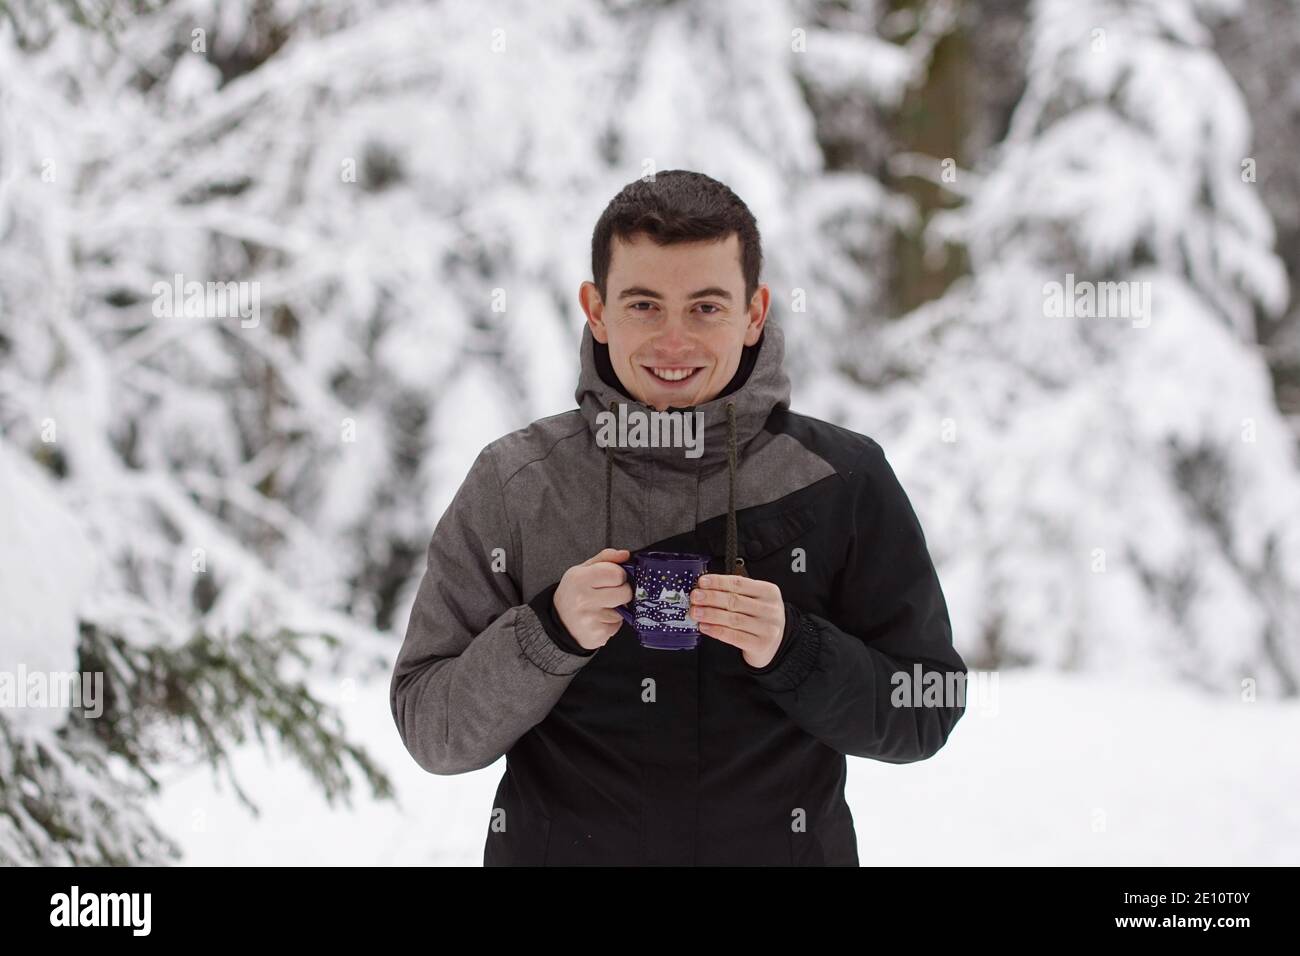 Winter Time - Mann im Schnee, Aufwärmen mit einem heißen Getränk. Eine Tasse Tee oder Glühwein halten. Stockfoto